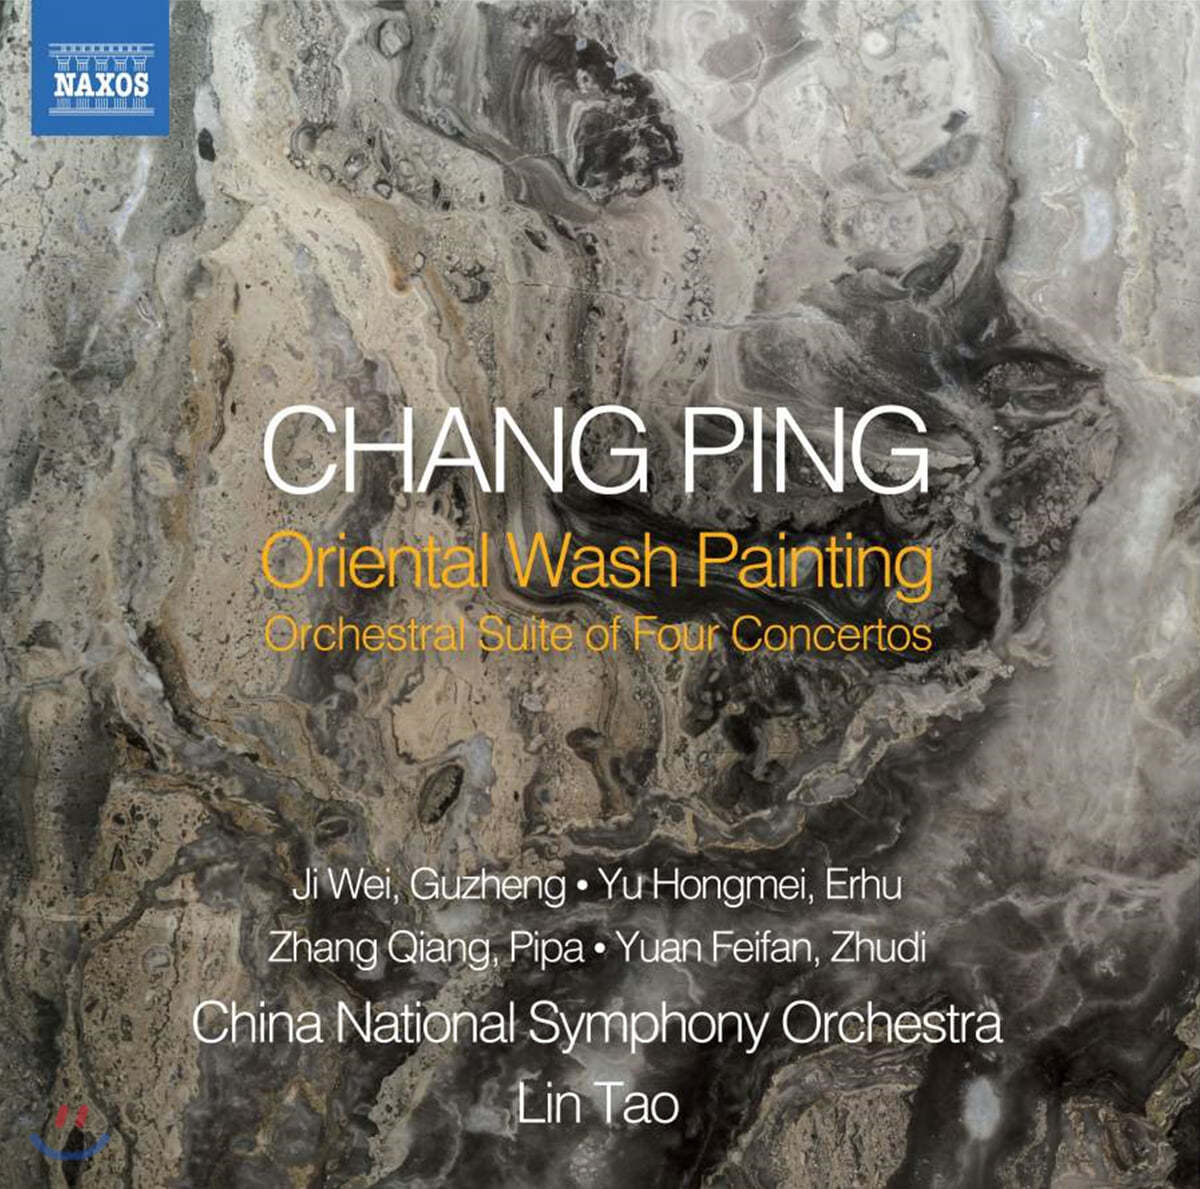 Lin Tao 창 핑: 오리엔탈 워시 페인팅 (Chang Ping: Oriental Wash Painting)